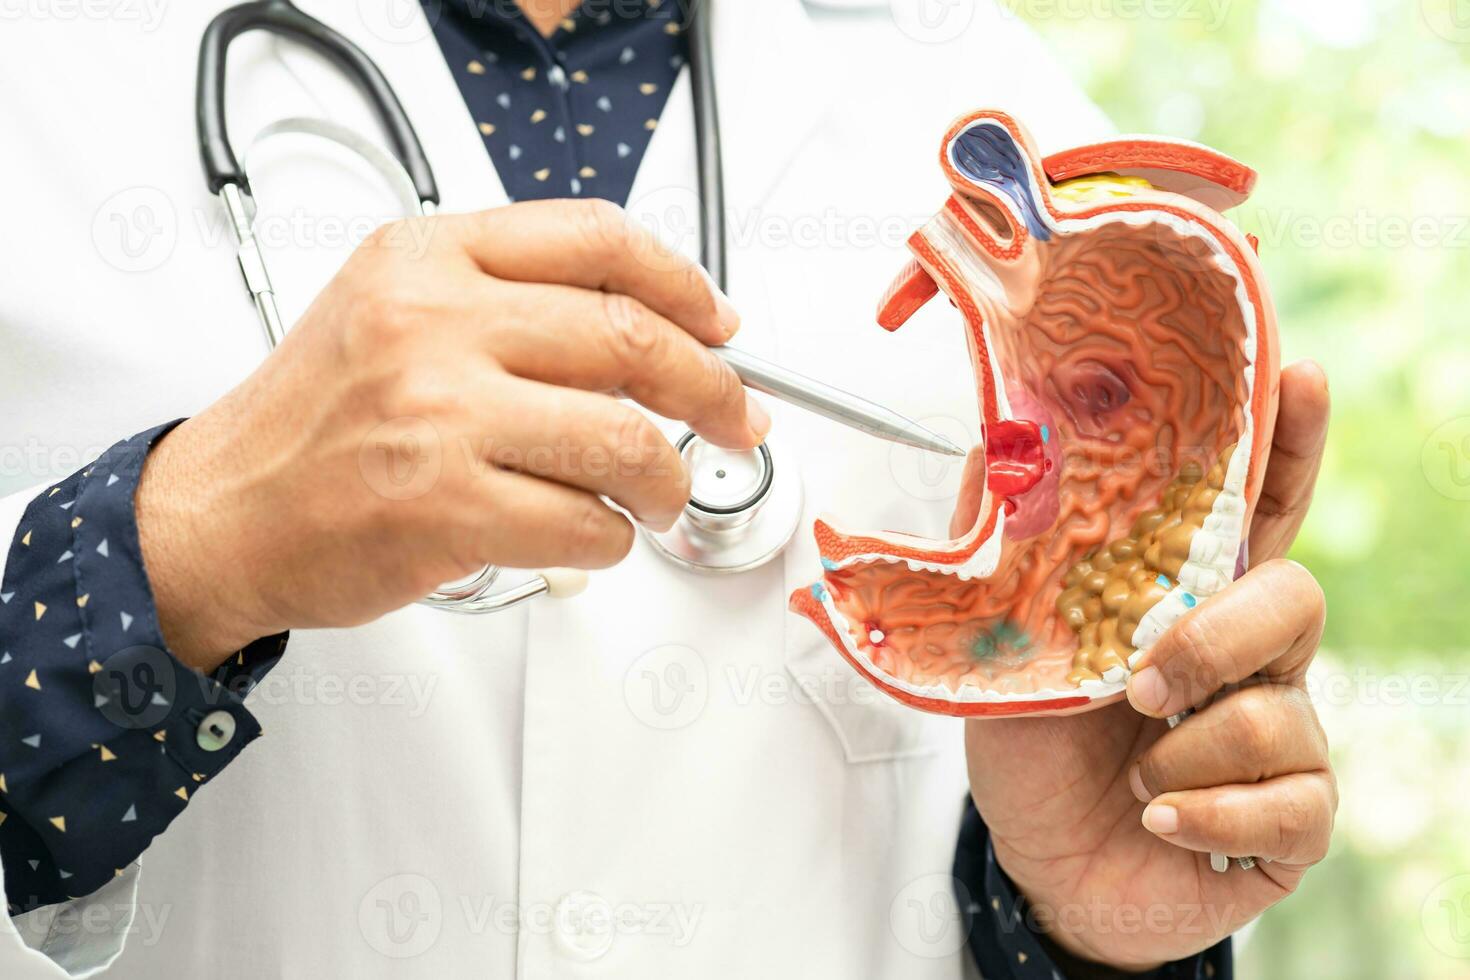 mage sjukdom, läkare innehav anatomi modell för studie diagnos och behandling i sjukhus. foto